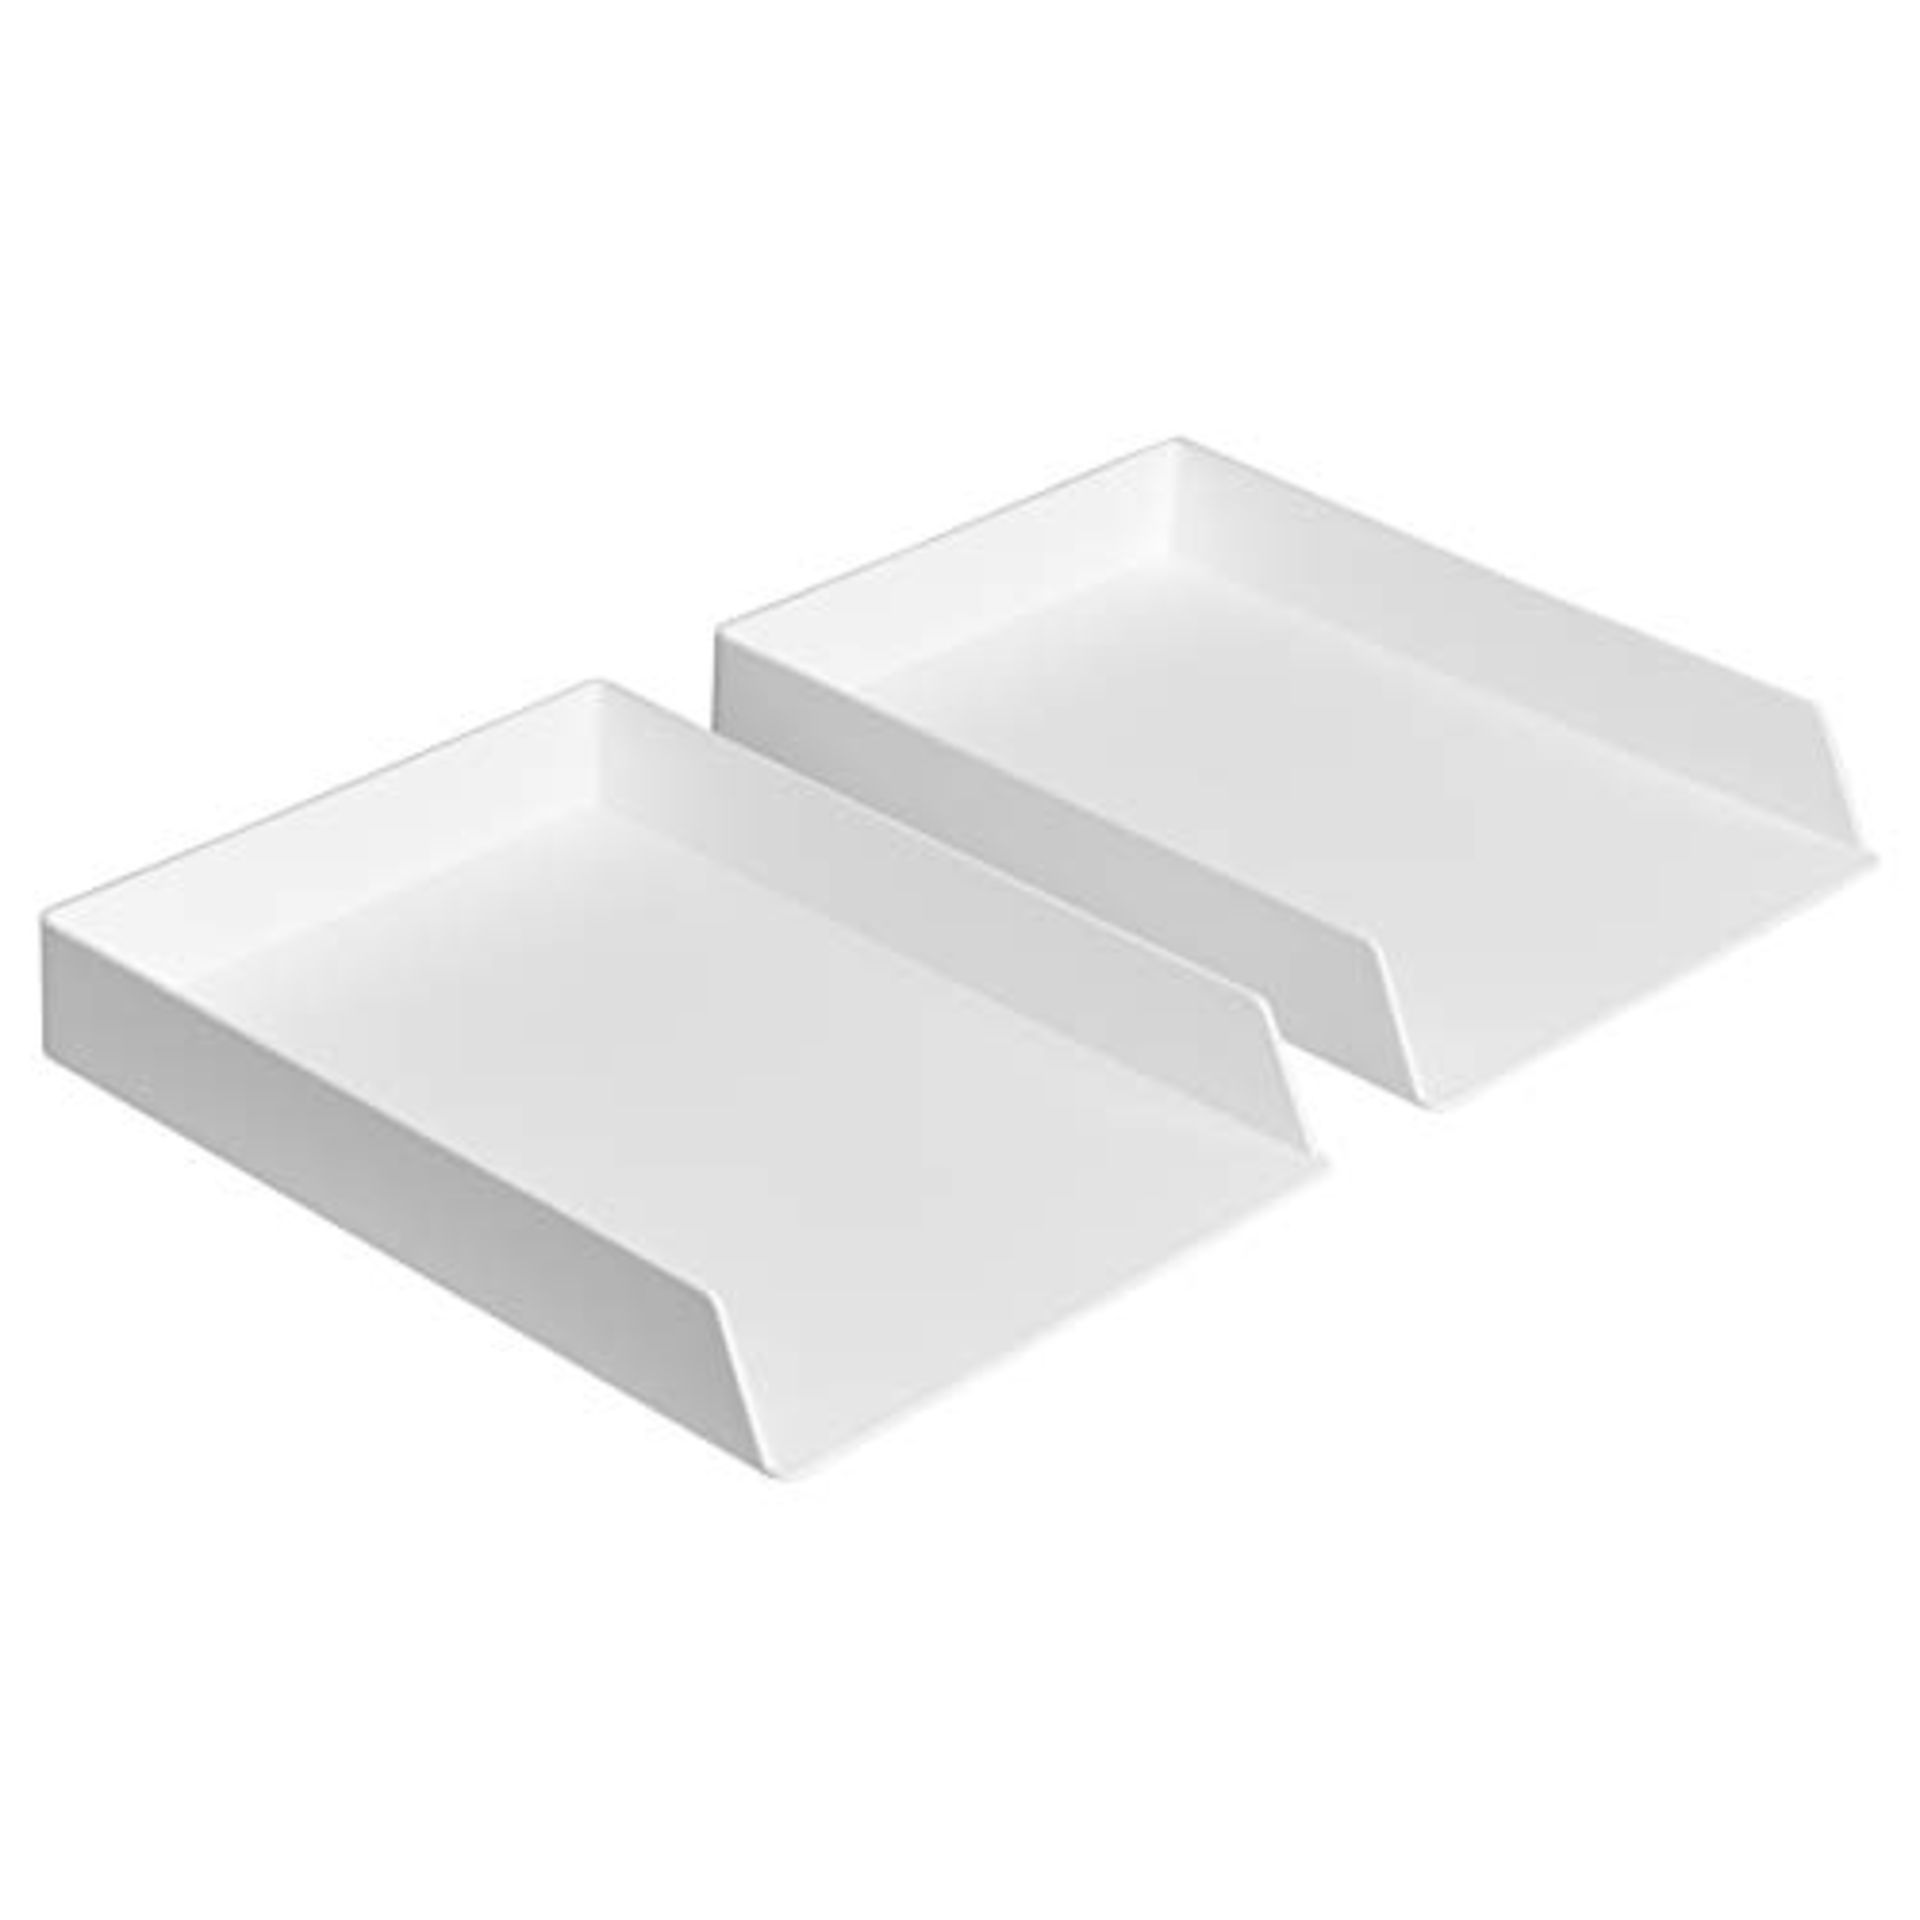 [CRACKED] Amazon Basics Plastic Organizer - Letter Tray, White, 2-Pack